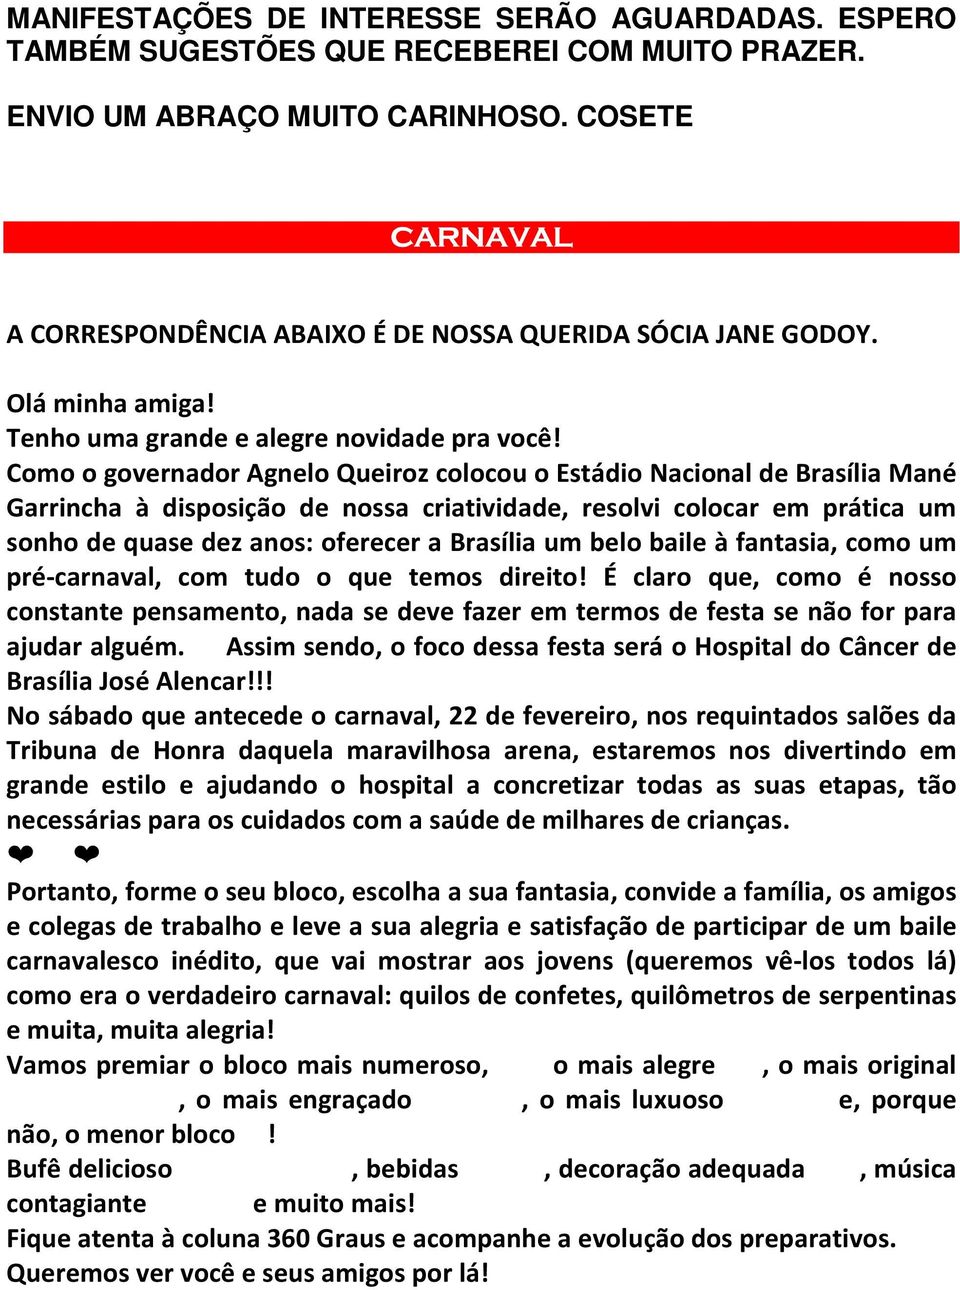 Como o governador Agnelo Queiroz colocou o Estádio Nacional de Brasília Mané Garrincha à disposição de nossa criatividade, resolvi colocar em prática um sonho de quase dez anos: oferecer a Brasília